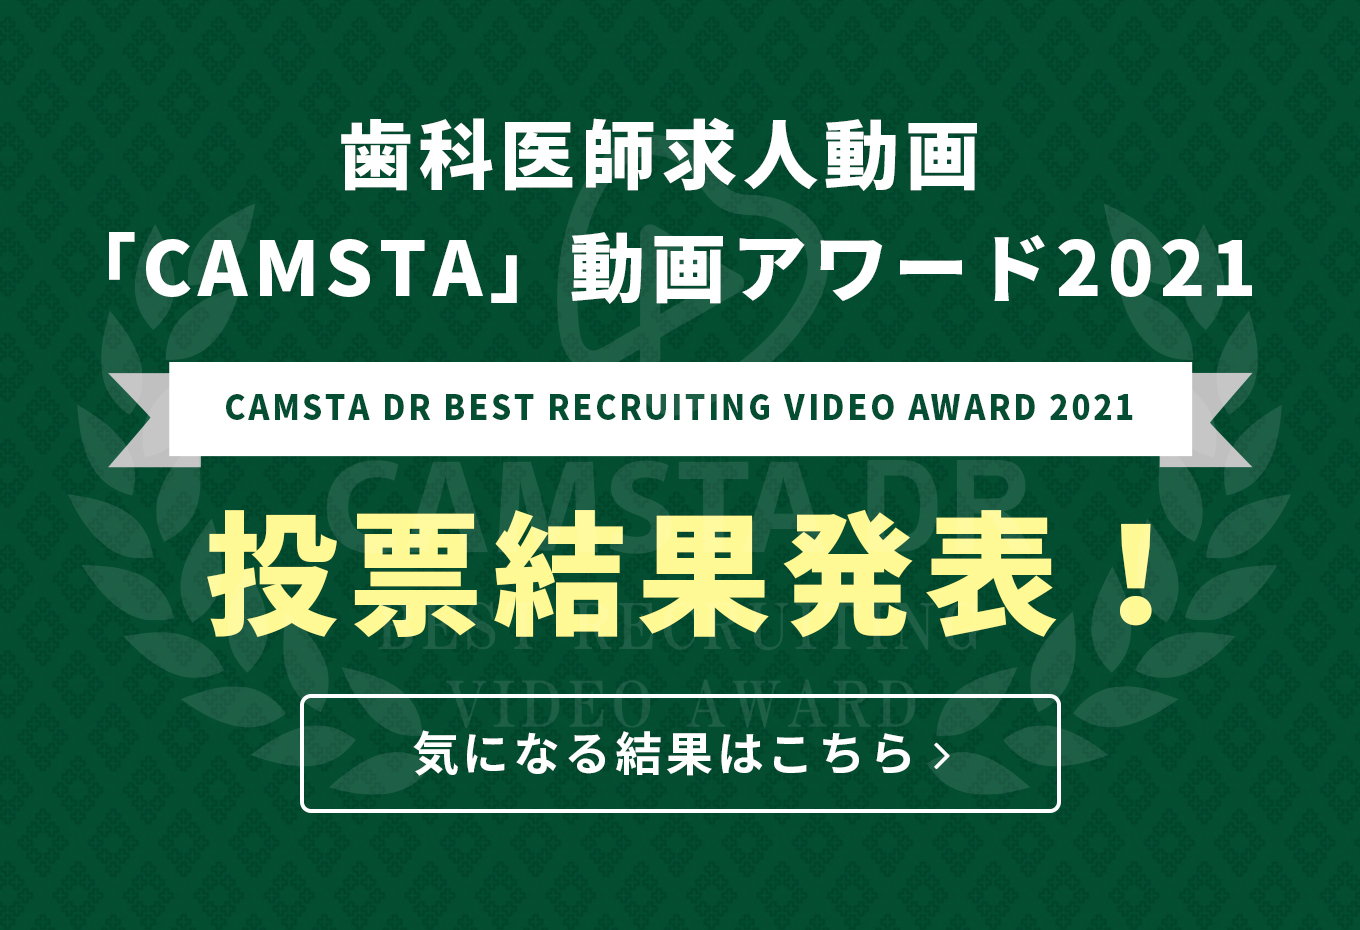 歯科医師求人動画「CAMSTA」動画アワード2021